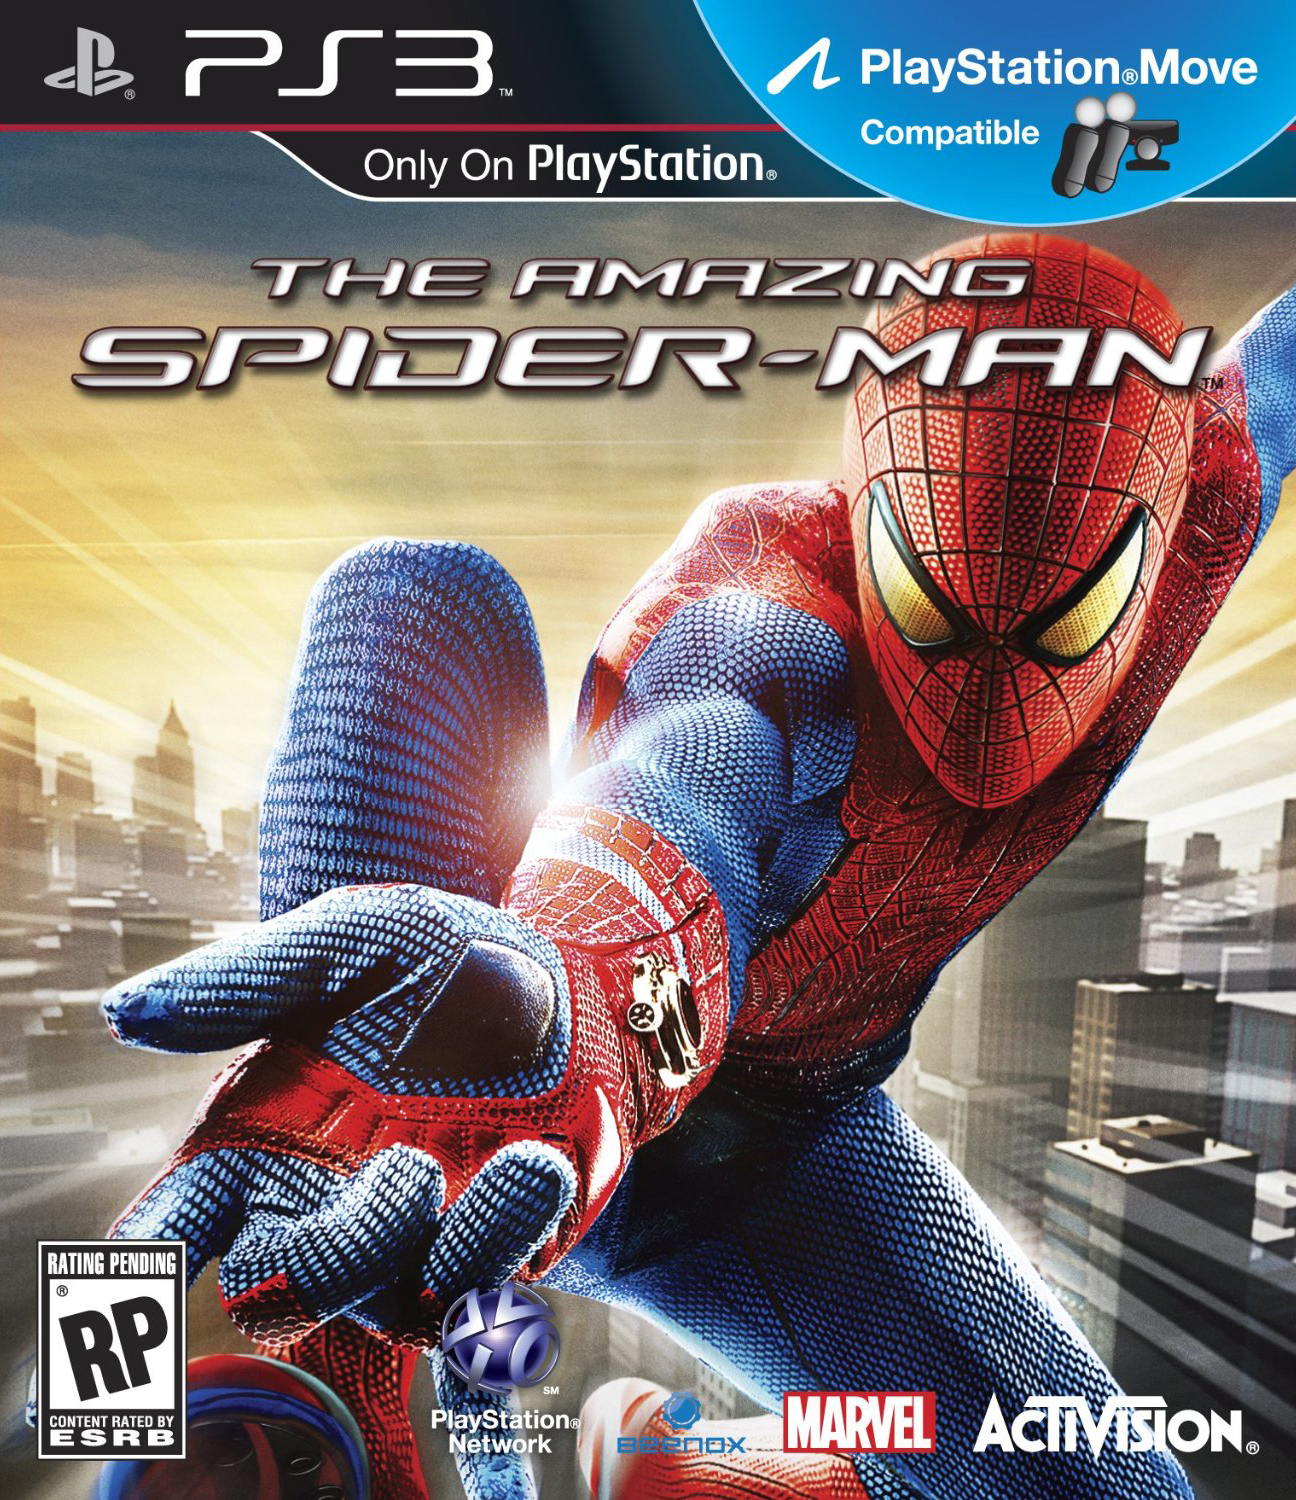 jaquette du jeu vidéo The Amazing Spider-Man